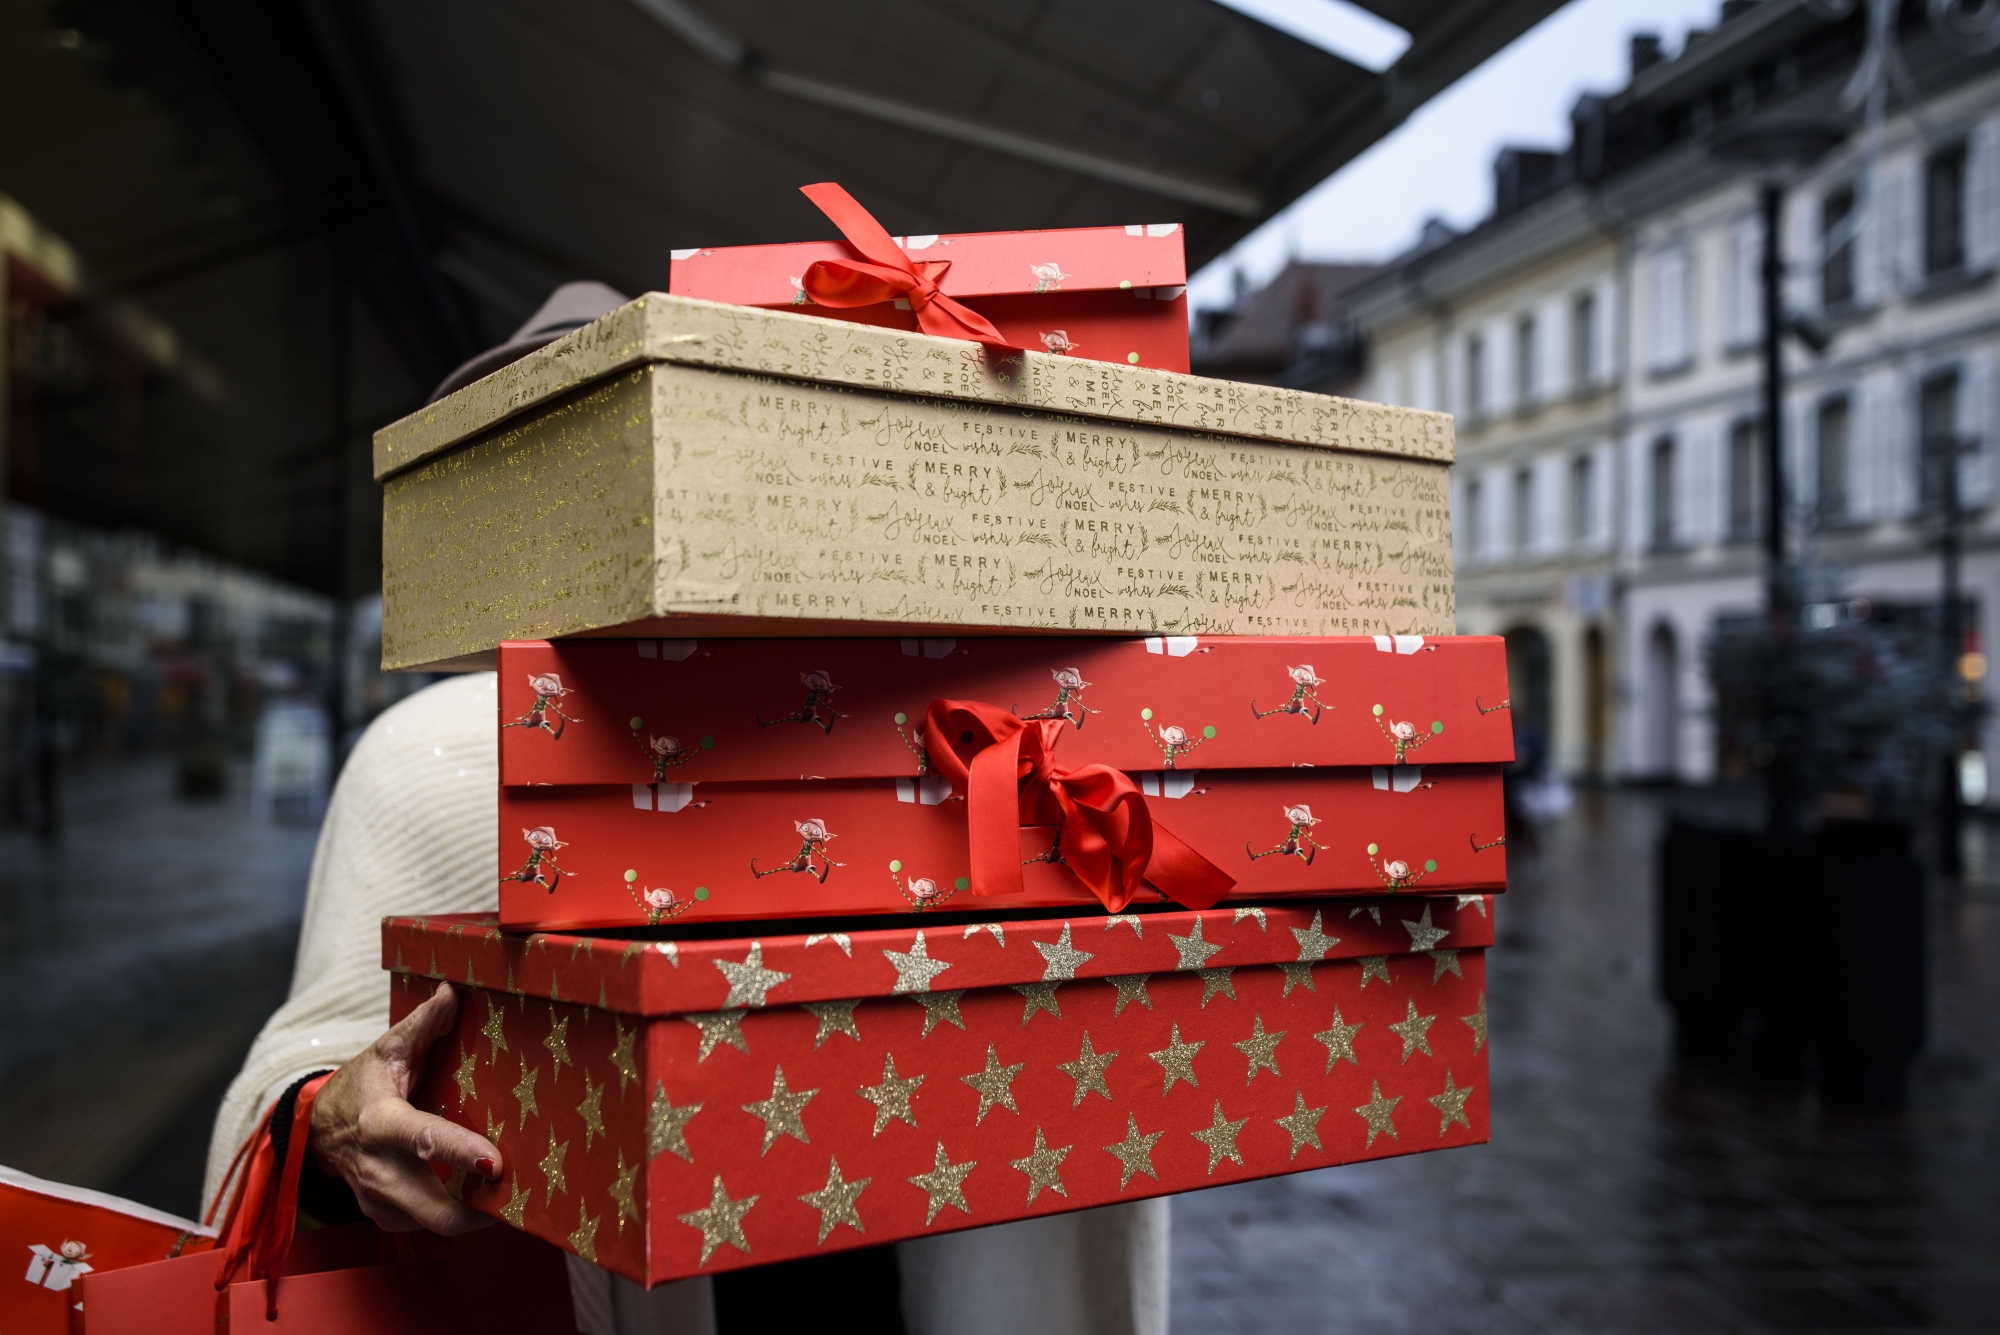 Trouver le bon cadeau, pas toujours évident. Les conseils des commerçants, l'originalité de leurs produits et la touche terroir sont des arguments pour acheter local et offrir un Noël aux enseignes du coin.